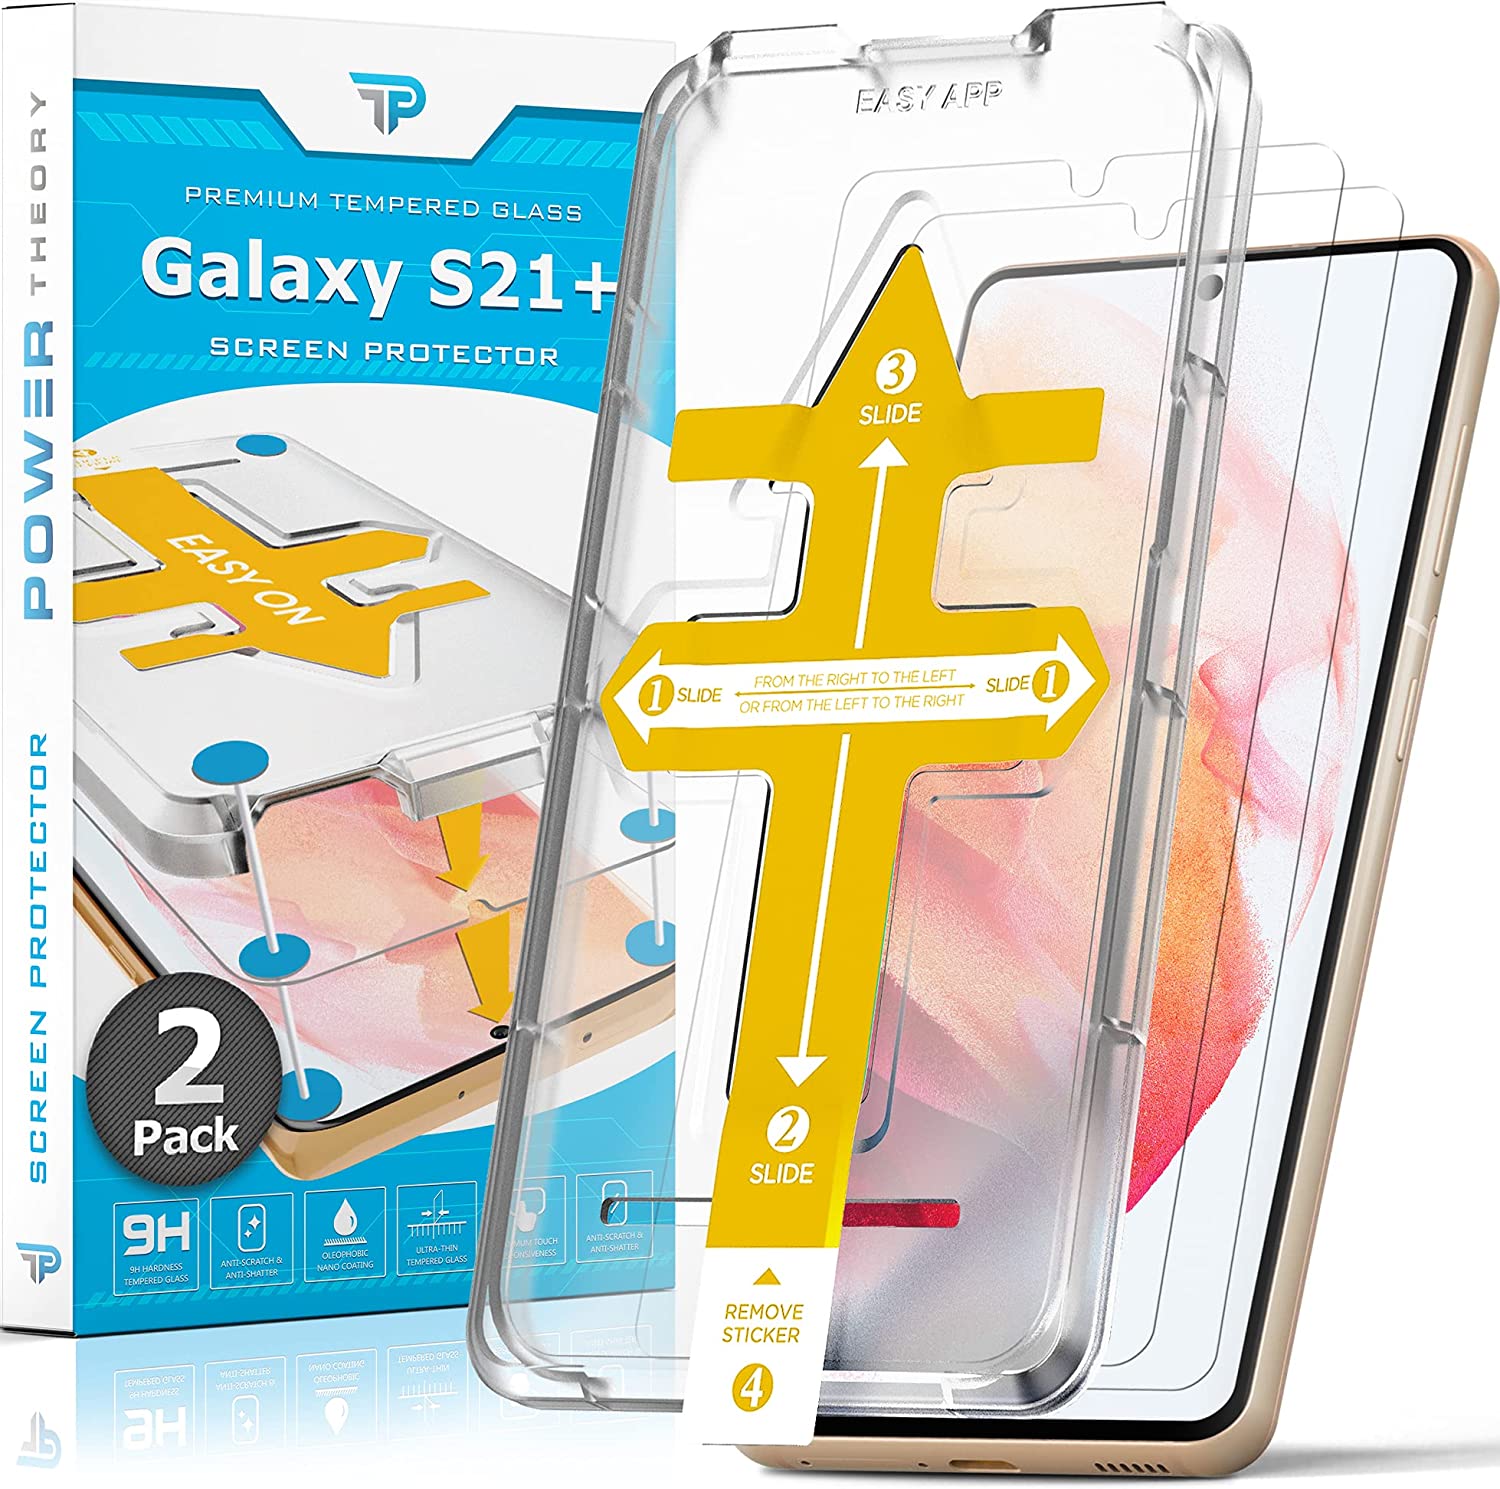 Samsung Galaxy S21 (Plus & Ultra) Panzerglas - Welcher ist der beste  Displayschutz? 